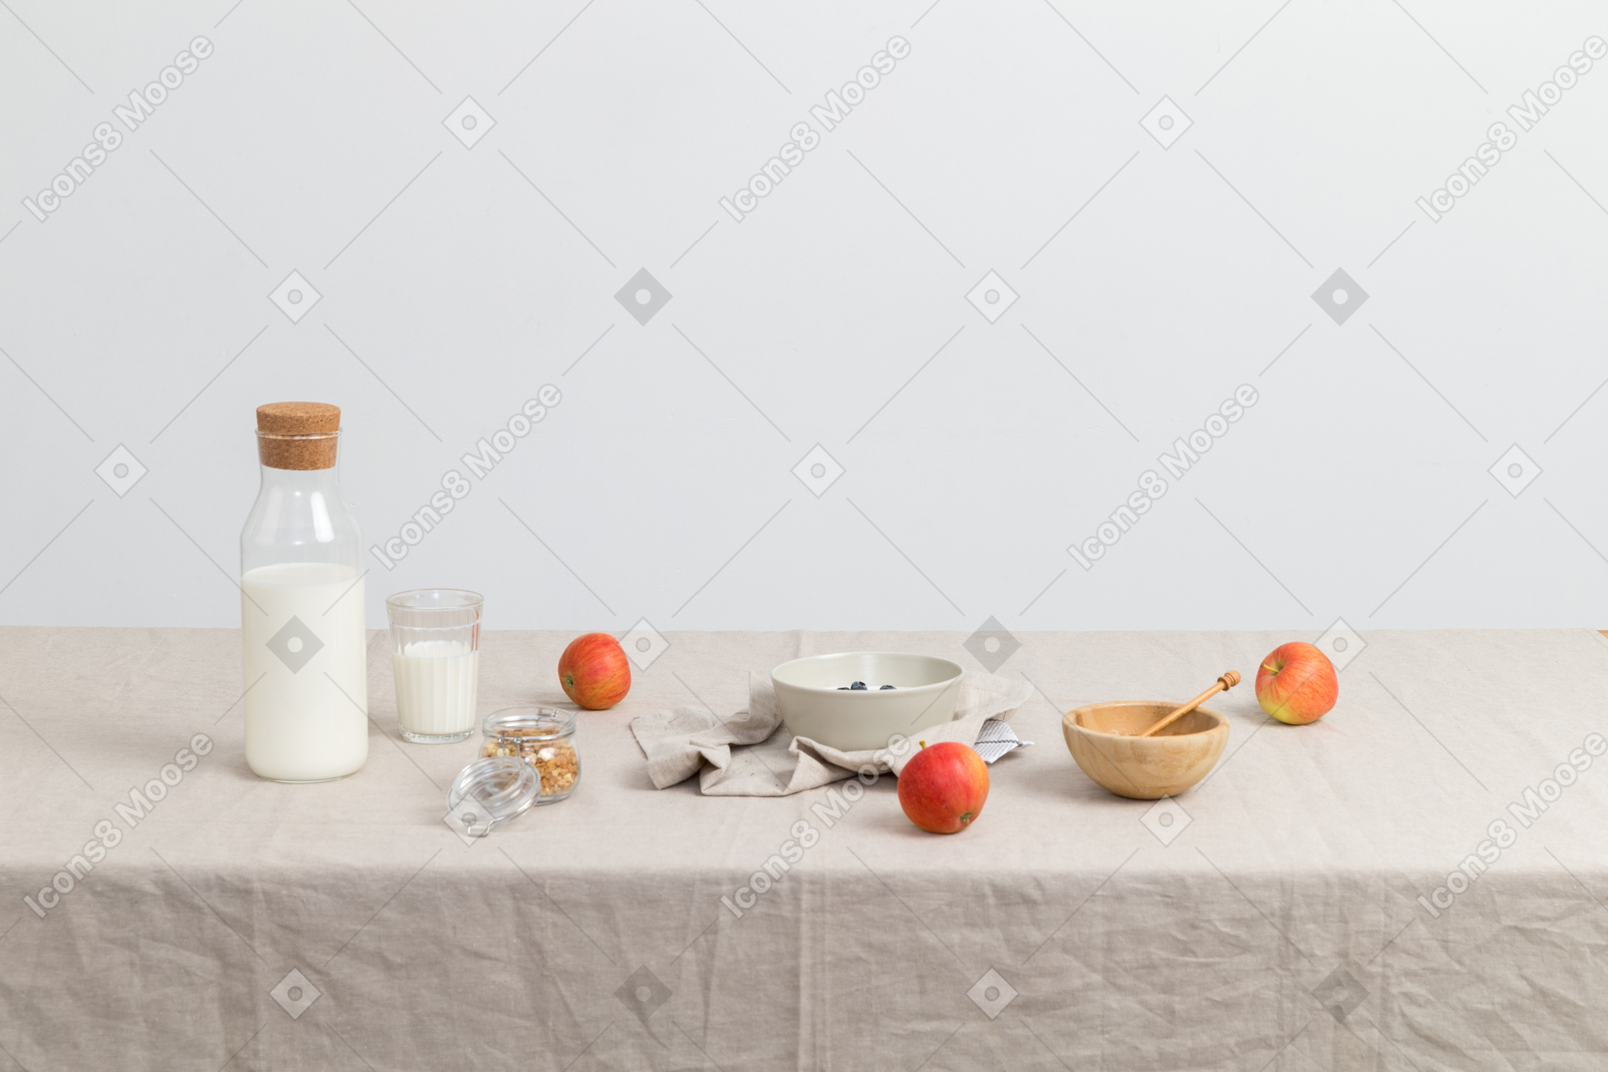 Bottle of milk, glass og milk, red apples and bowls